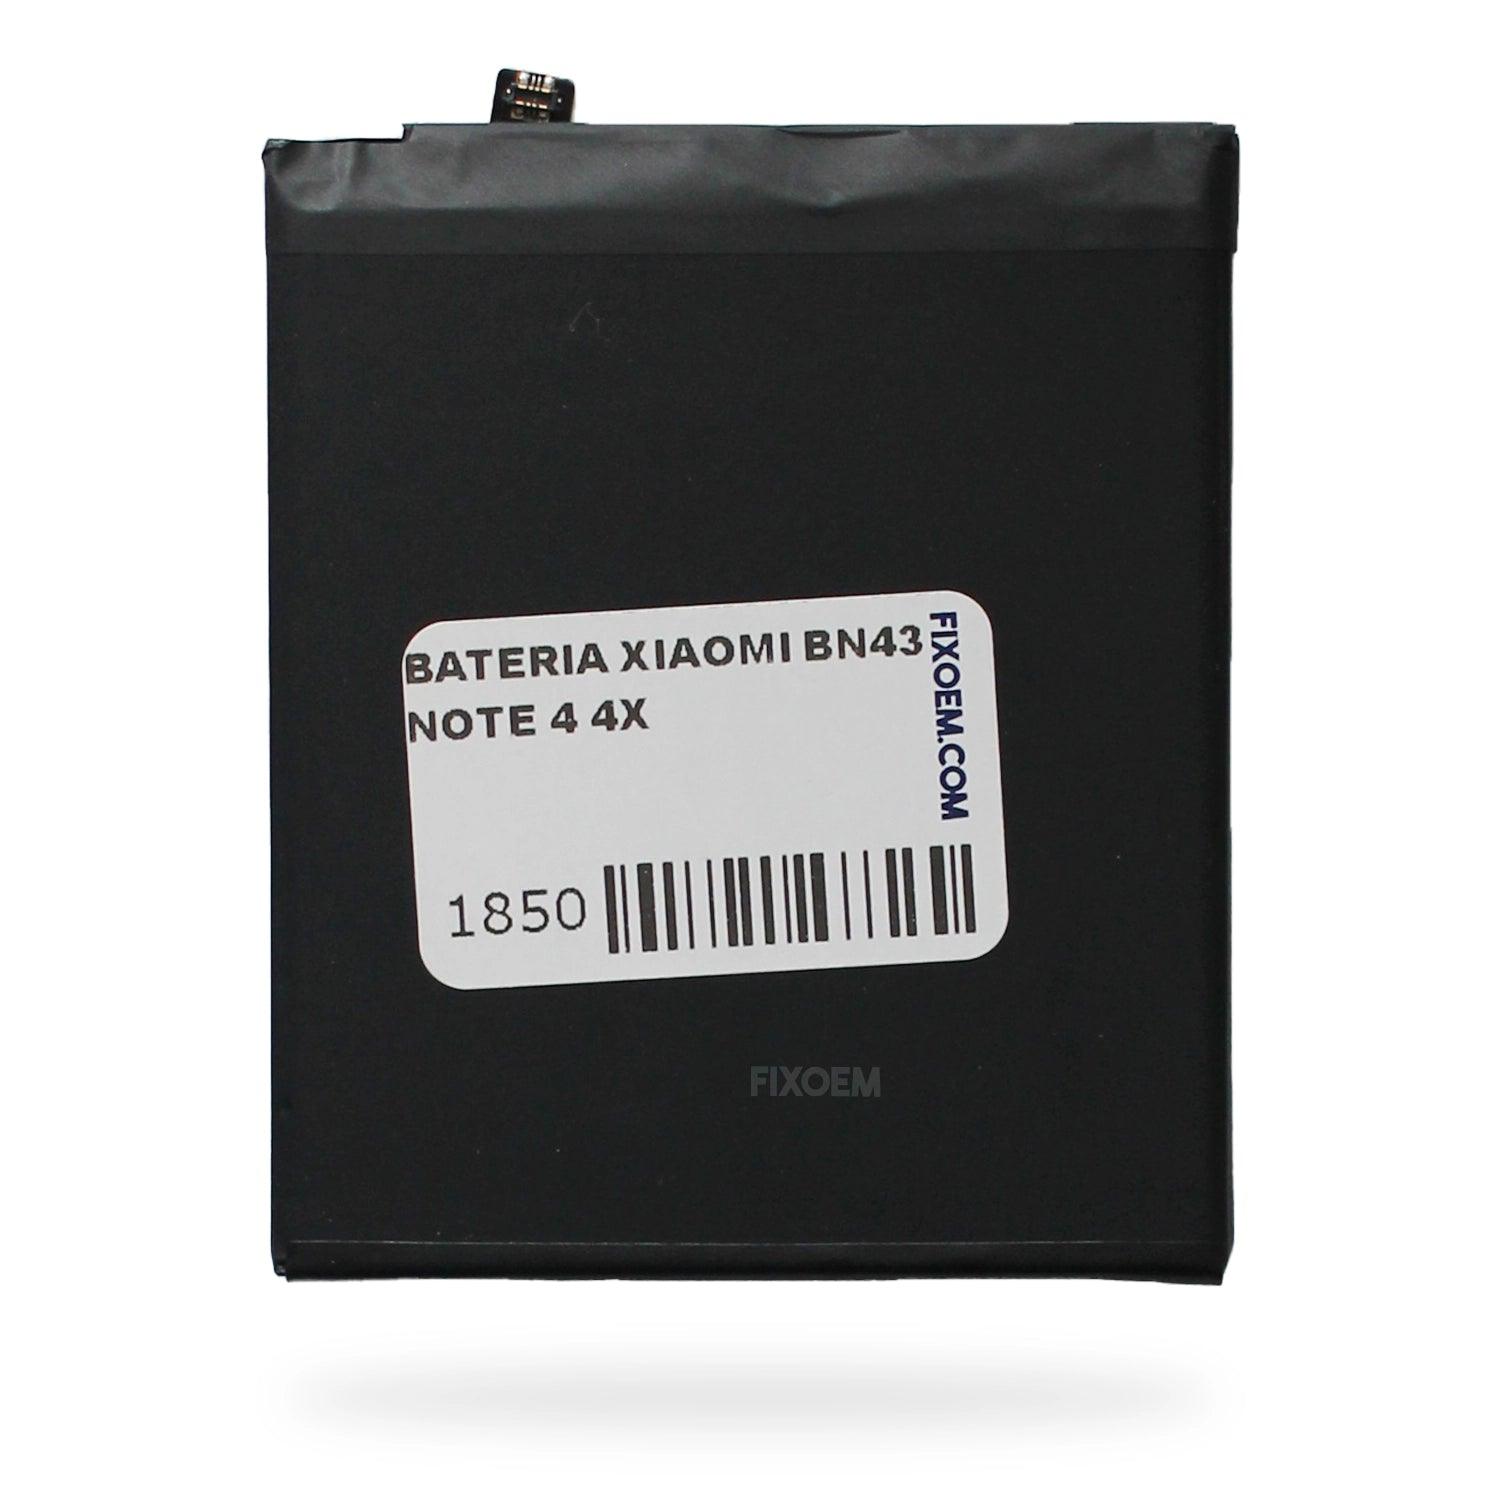 Bateria Xiaomi Redmi Note 4X Bn43 a solo $ 170.00 Refaccion y puestos celulares, refurbish y microelectronica.- FixOEM